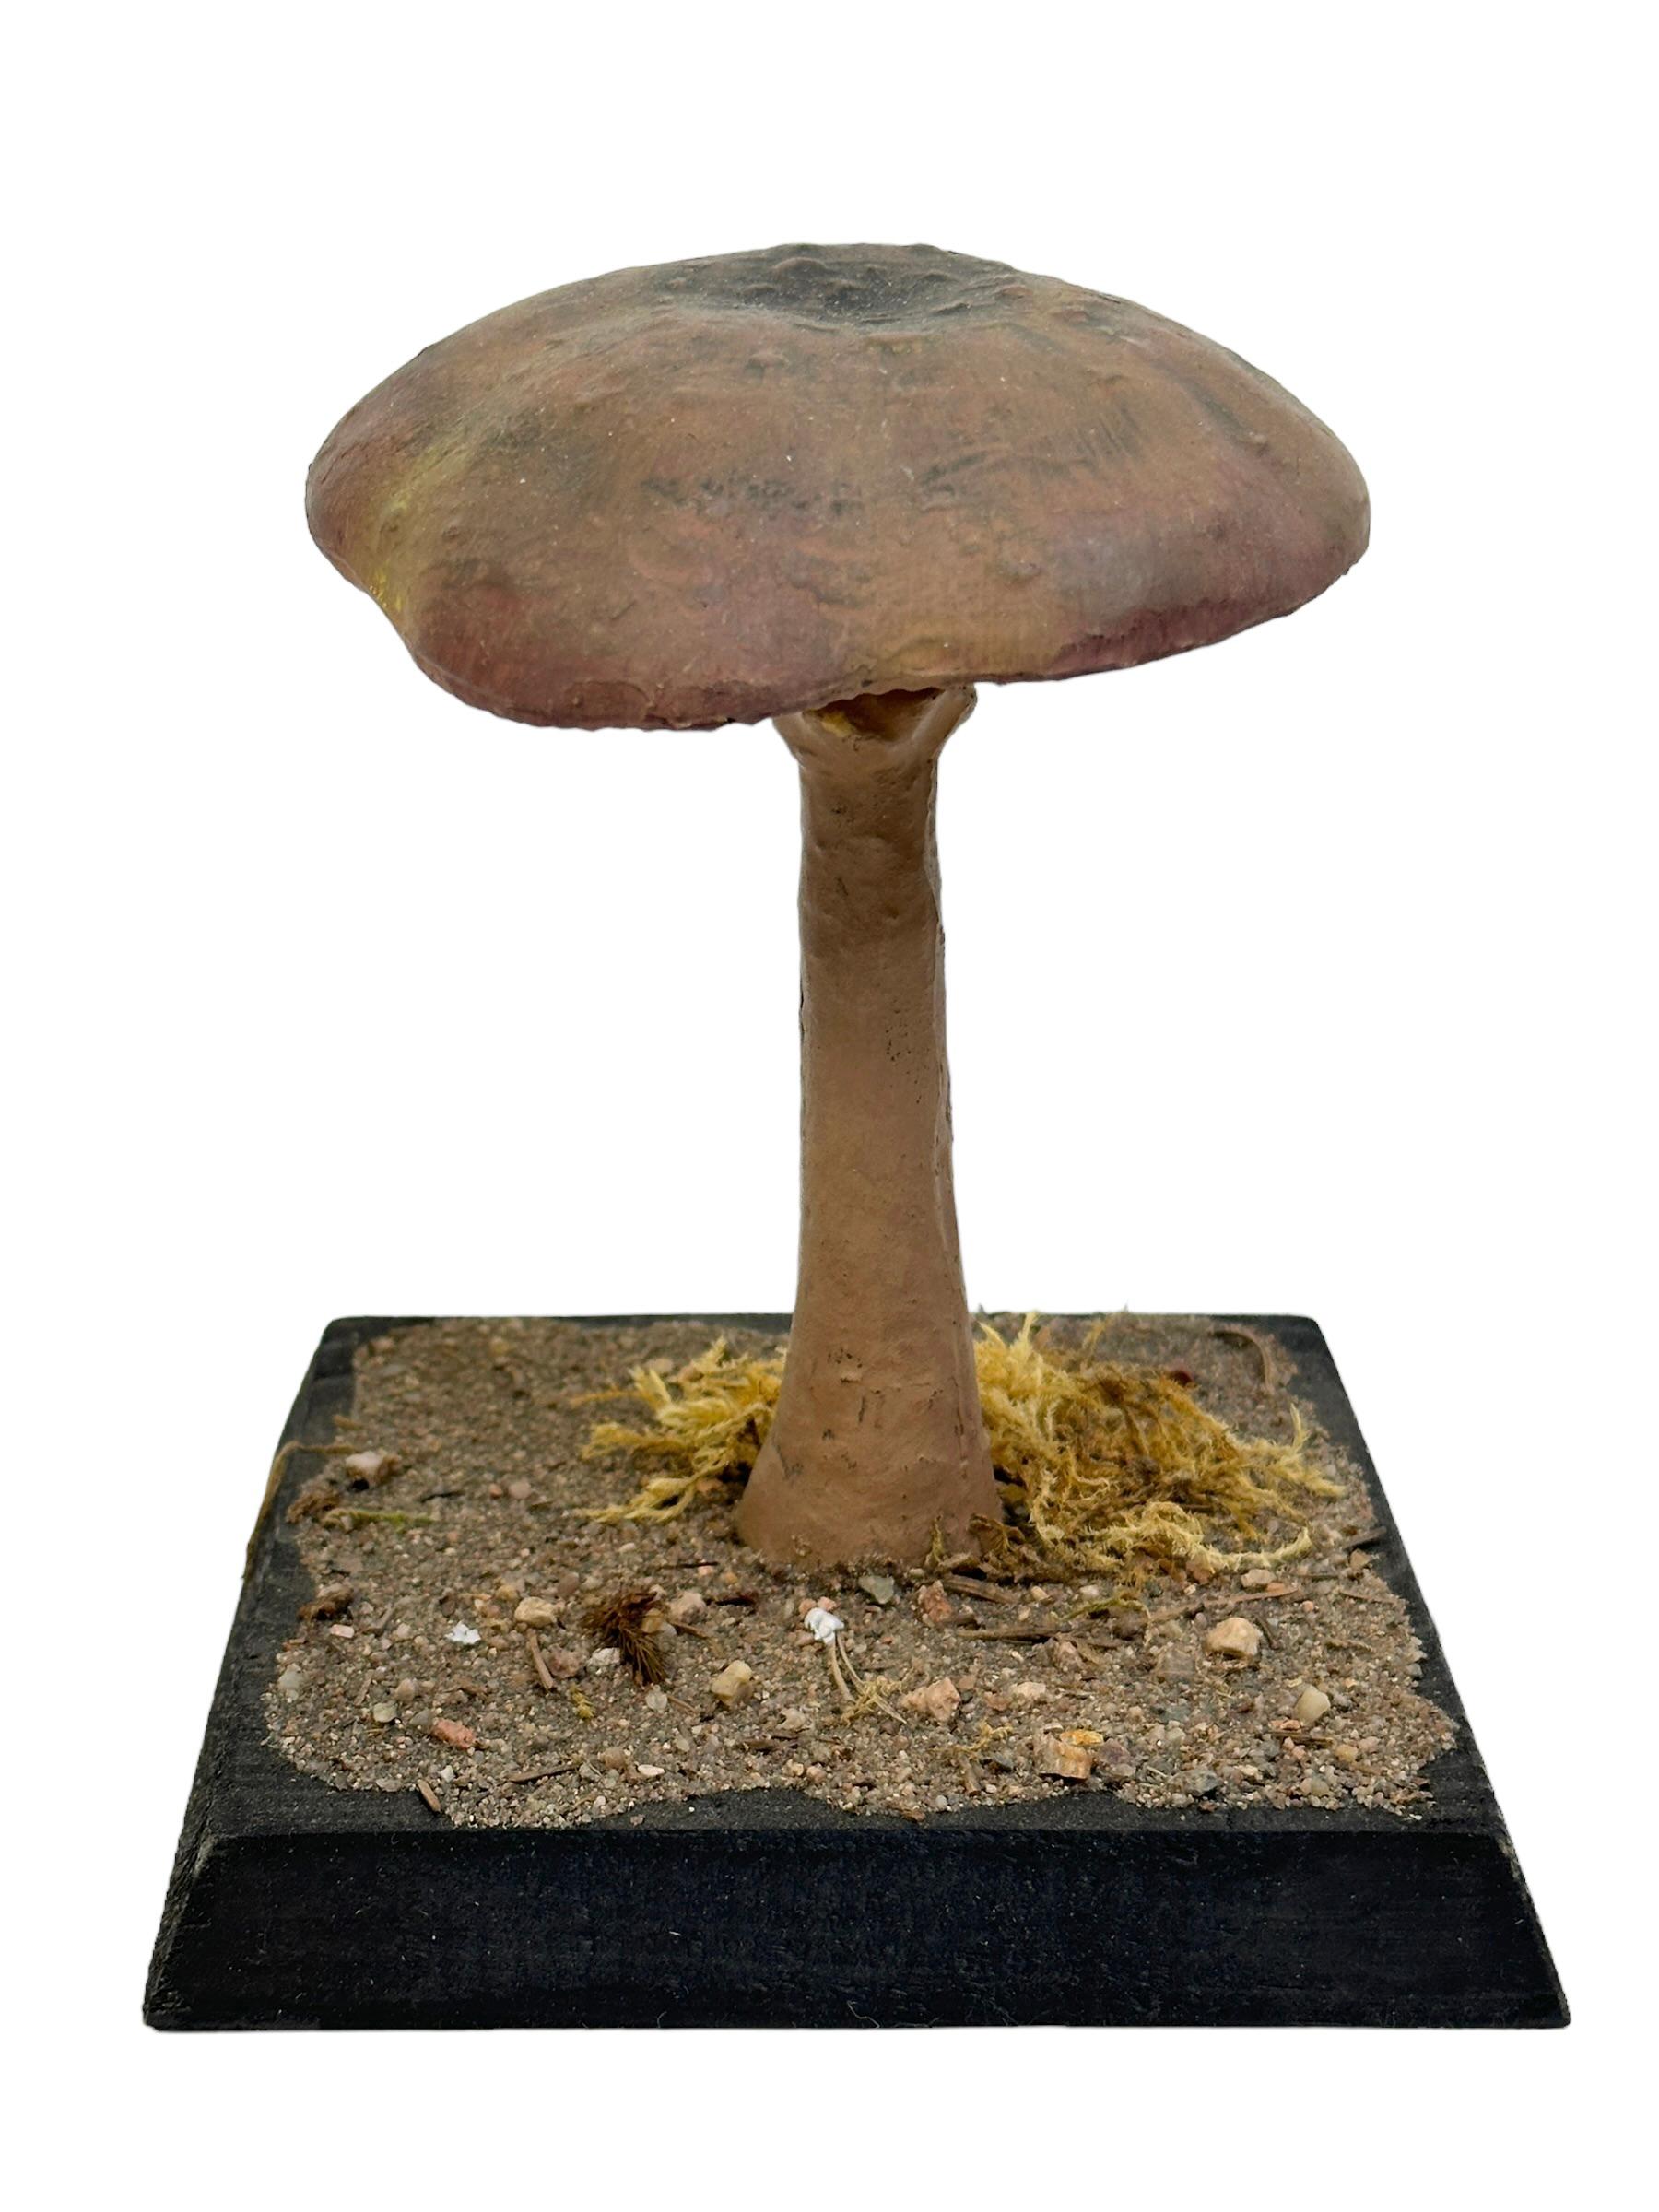 mushroom specimen